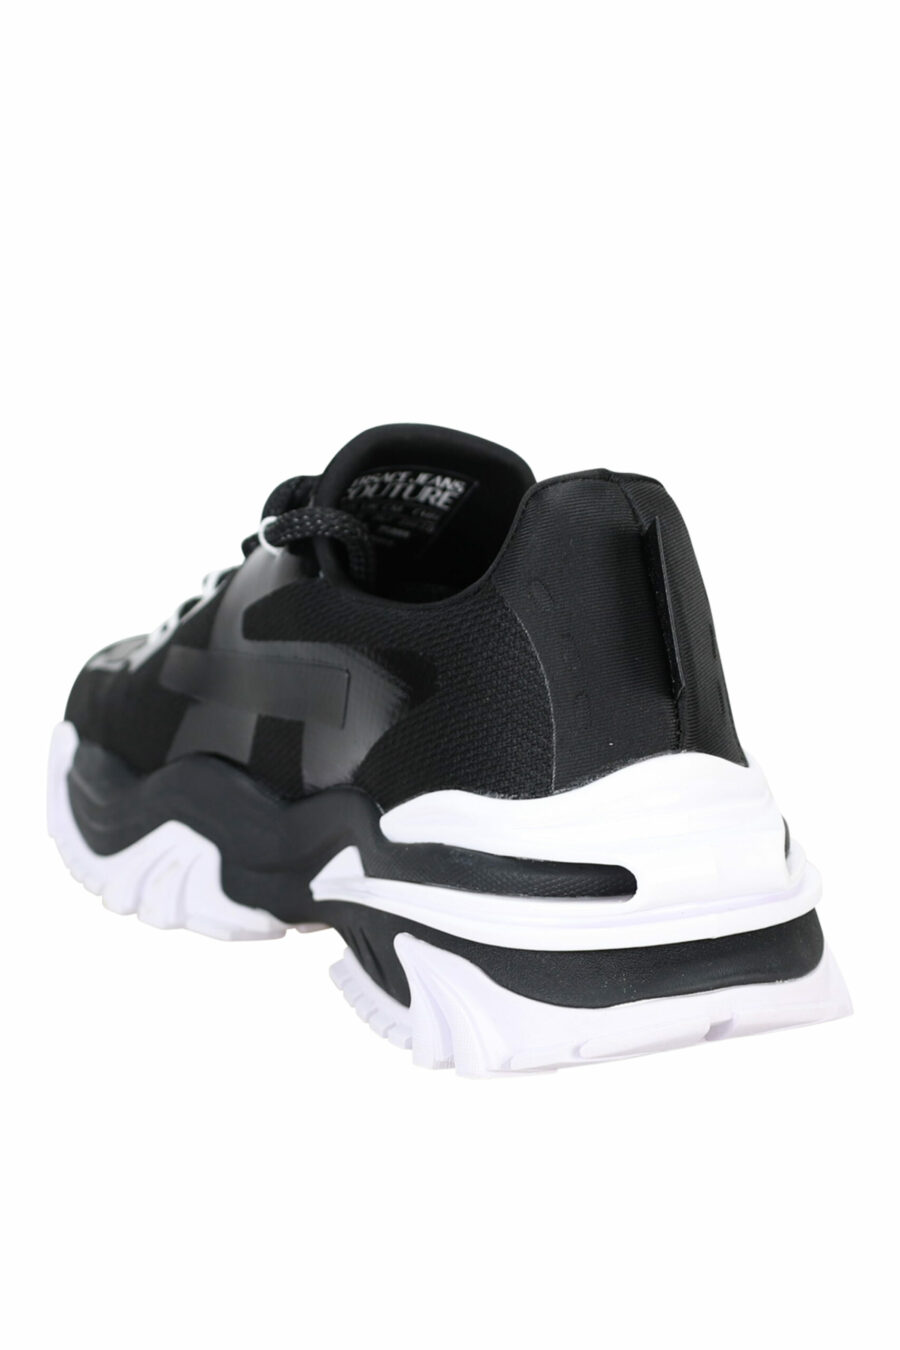 Zapatillas negras mix con minilogo blanco y suela blanca - 8052019489880 3 scaled